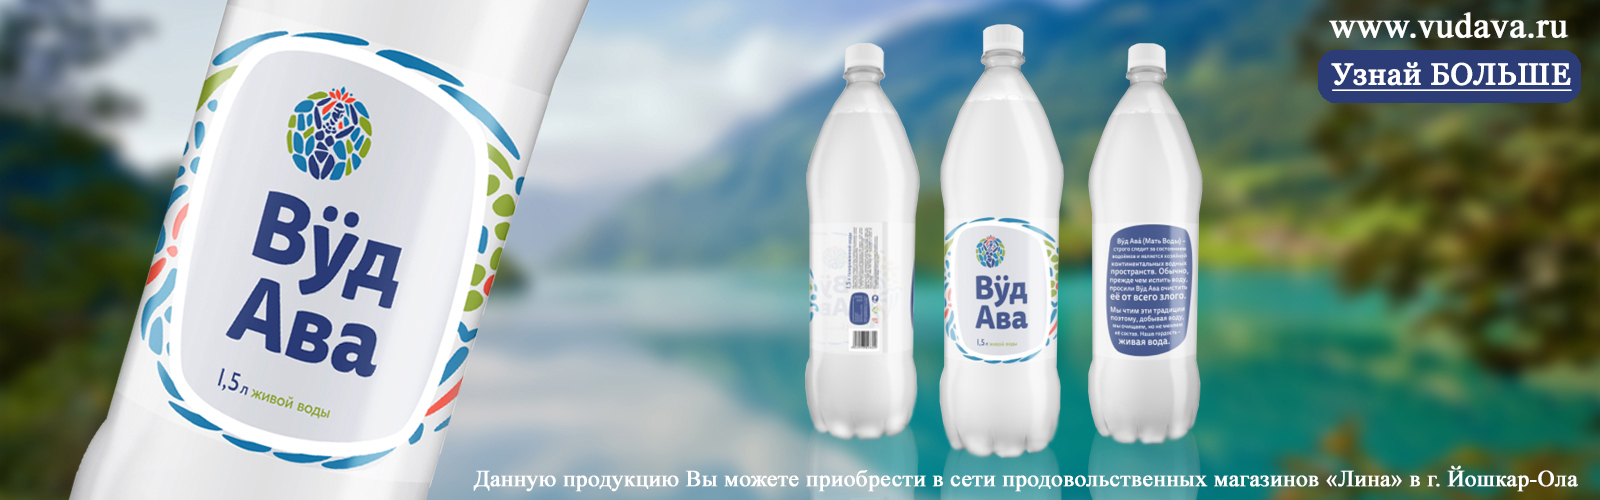 Производство безалкогольных напитков, минеральных вод и натурального кваса «ВудАва» vudava.ru